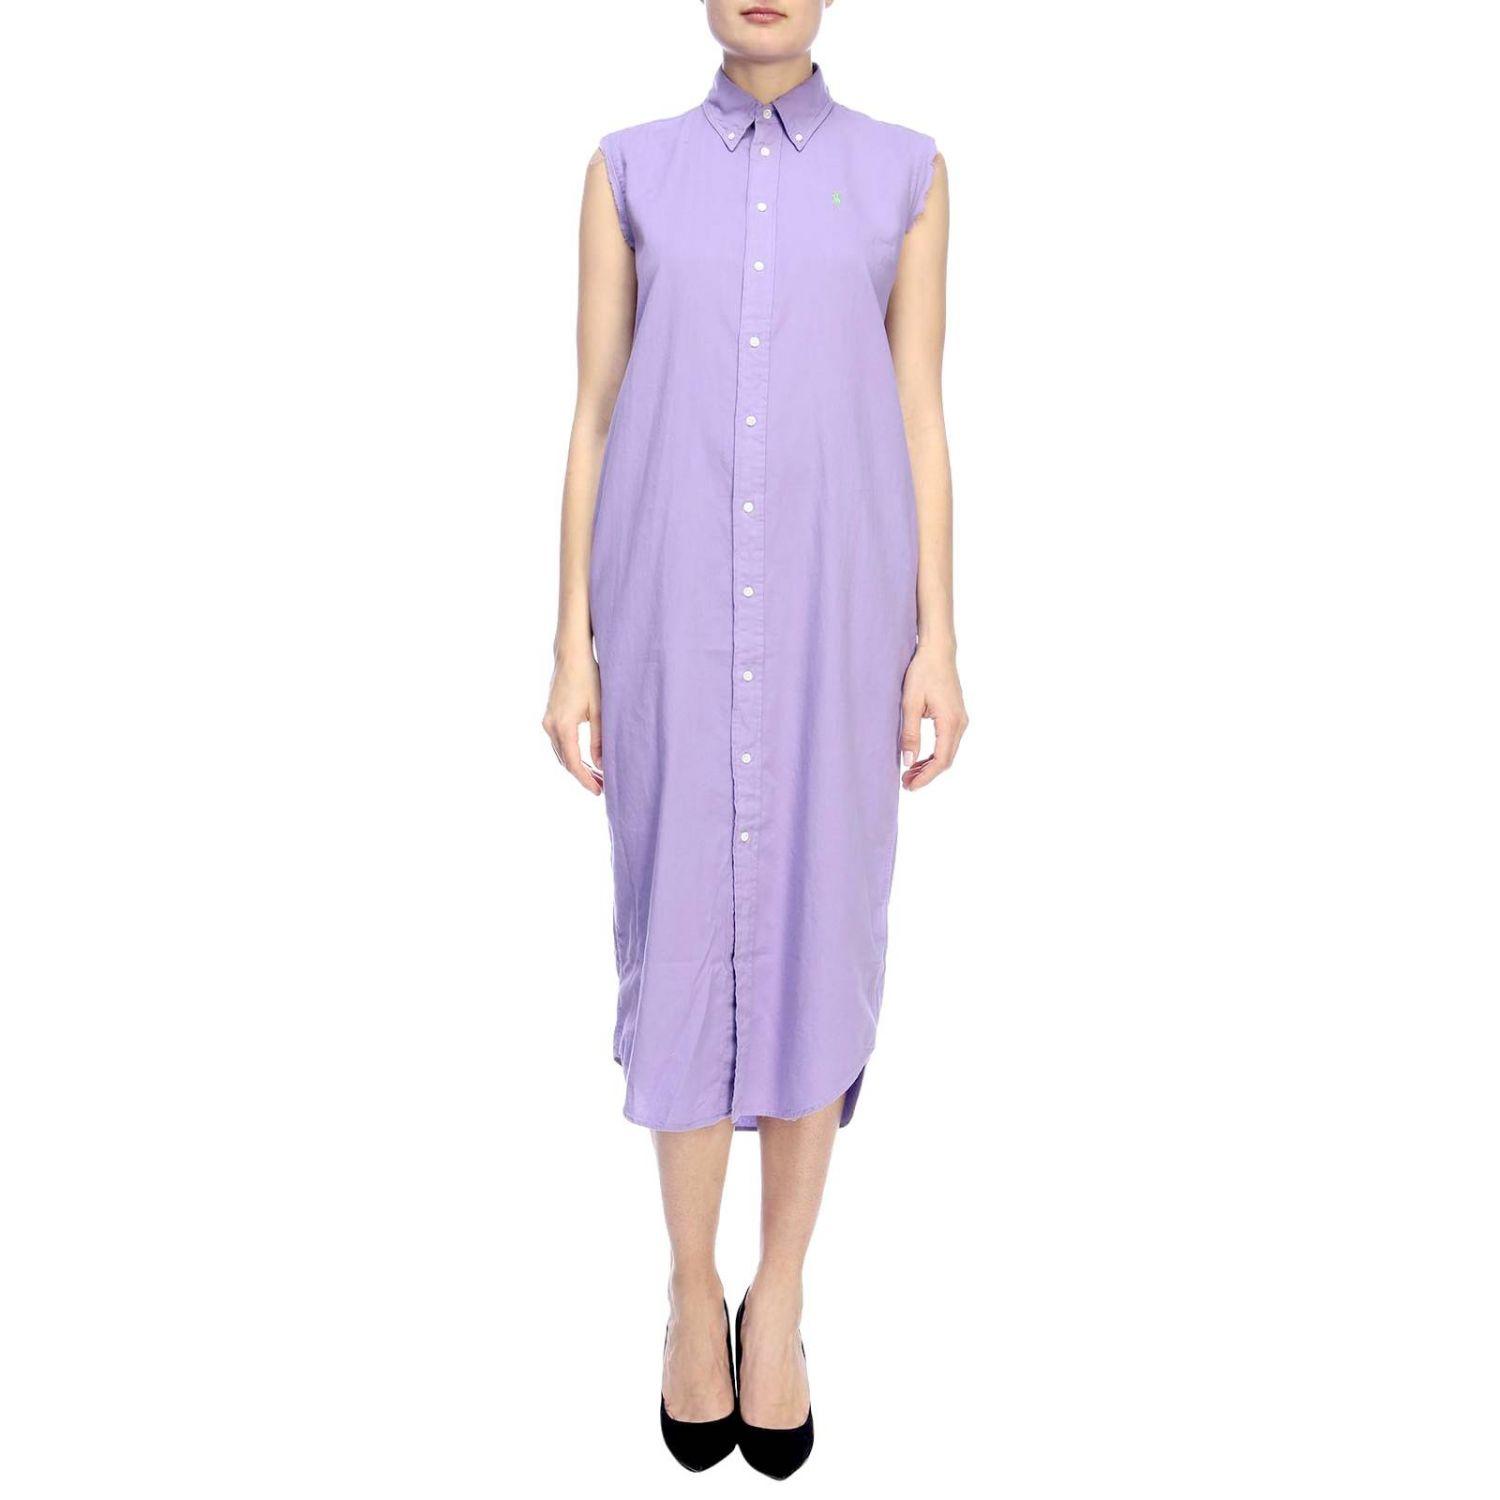 Polo Ralph Lauren Women's Dress in Lilac (Purple) - Lyst